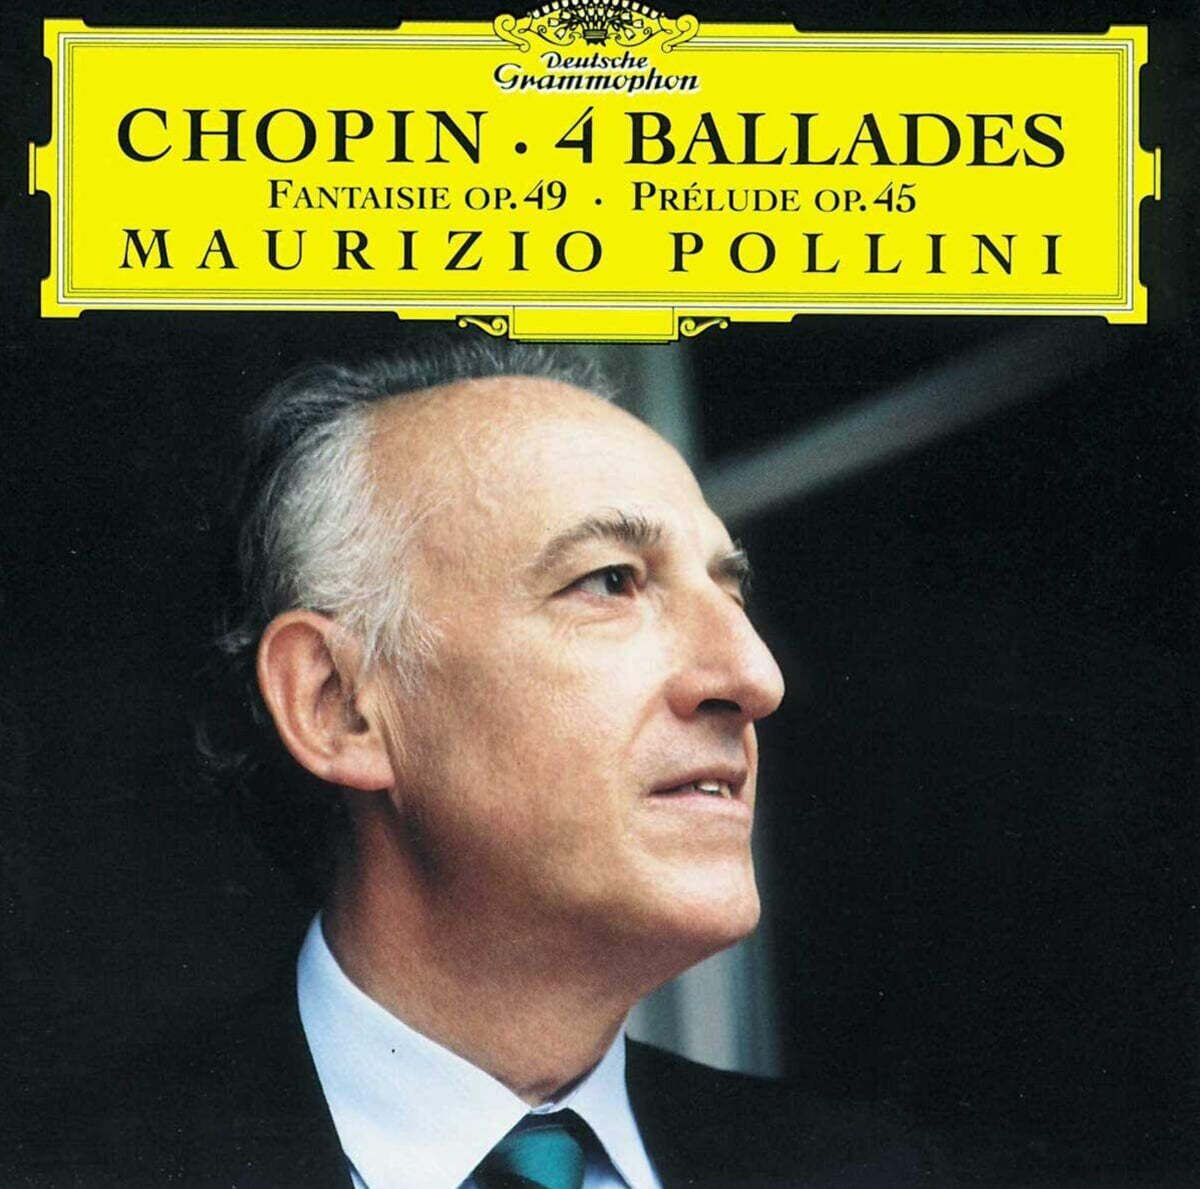 Maurizio Pollini 쇼팽: 4개의 발라드, 환상곡 (Chopin: 4 Ballade, Fantaisy Op.49)